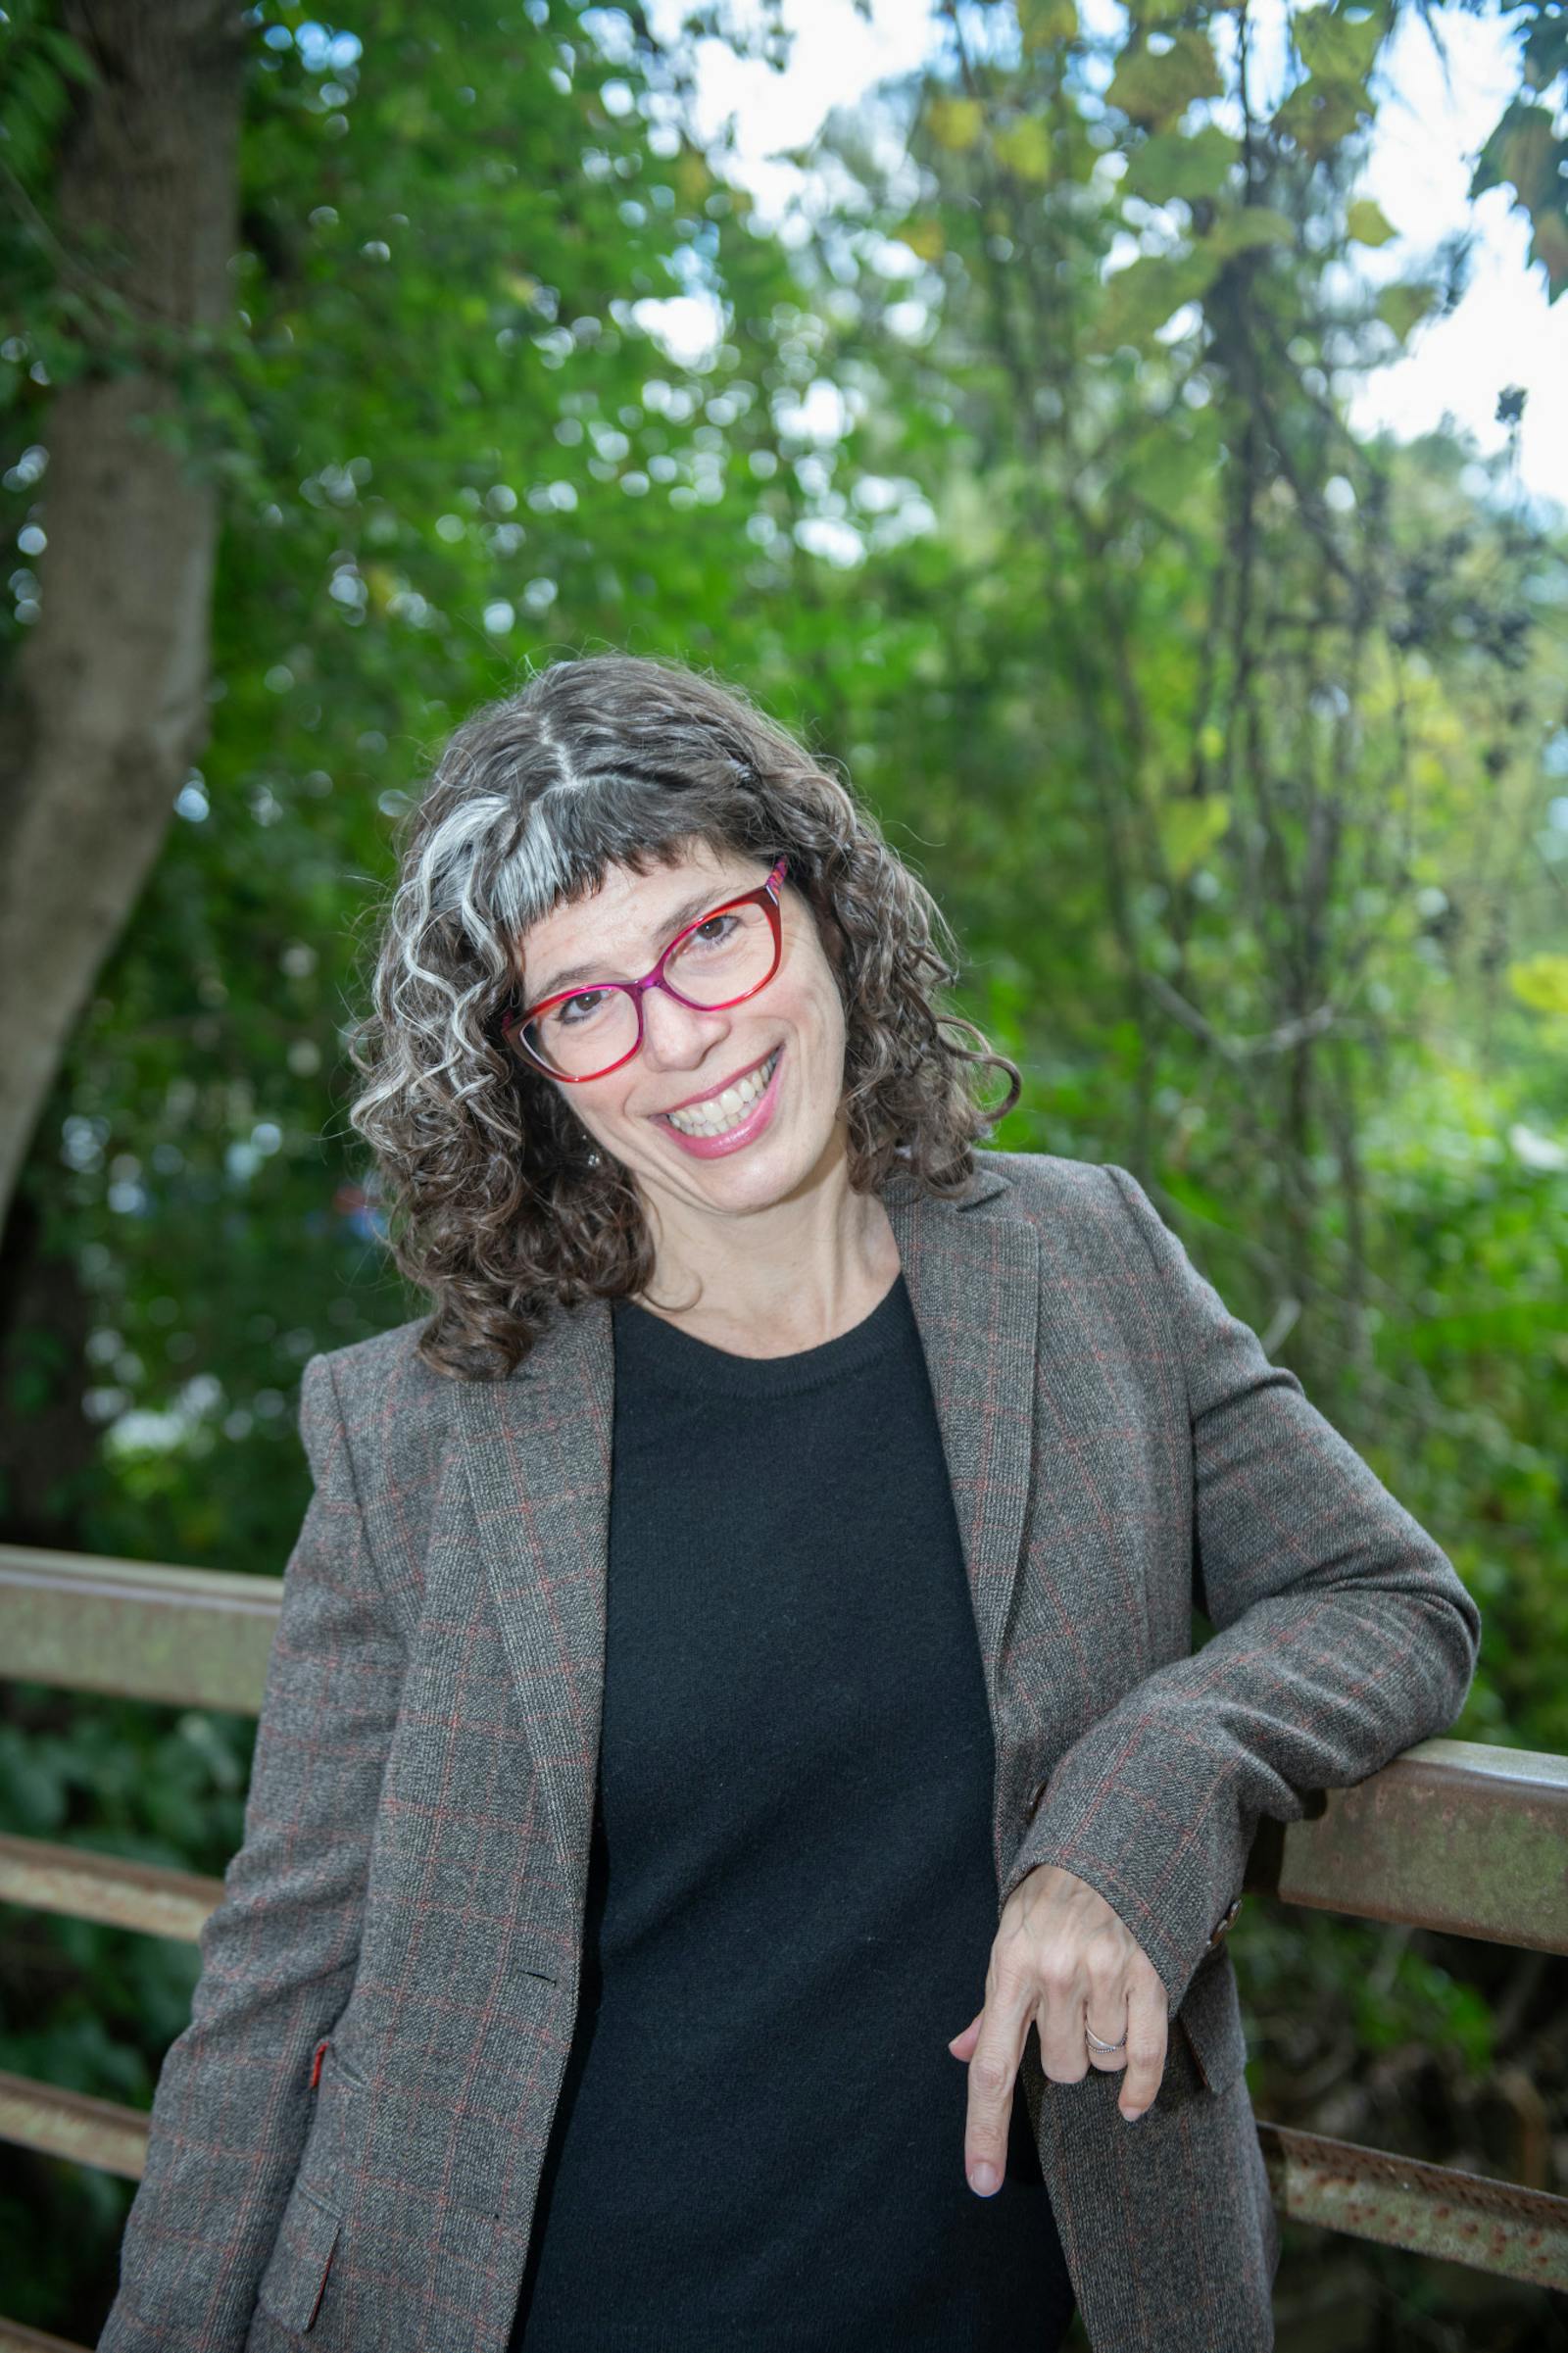 作者兼教授Dana R. Fisher成为环境、社区和公平中心主任的新篇章